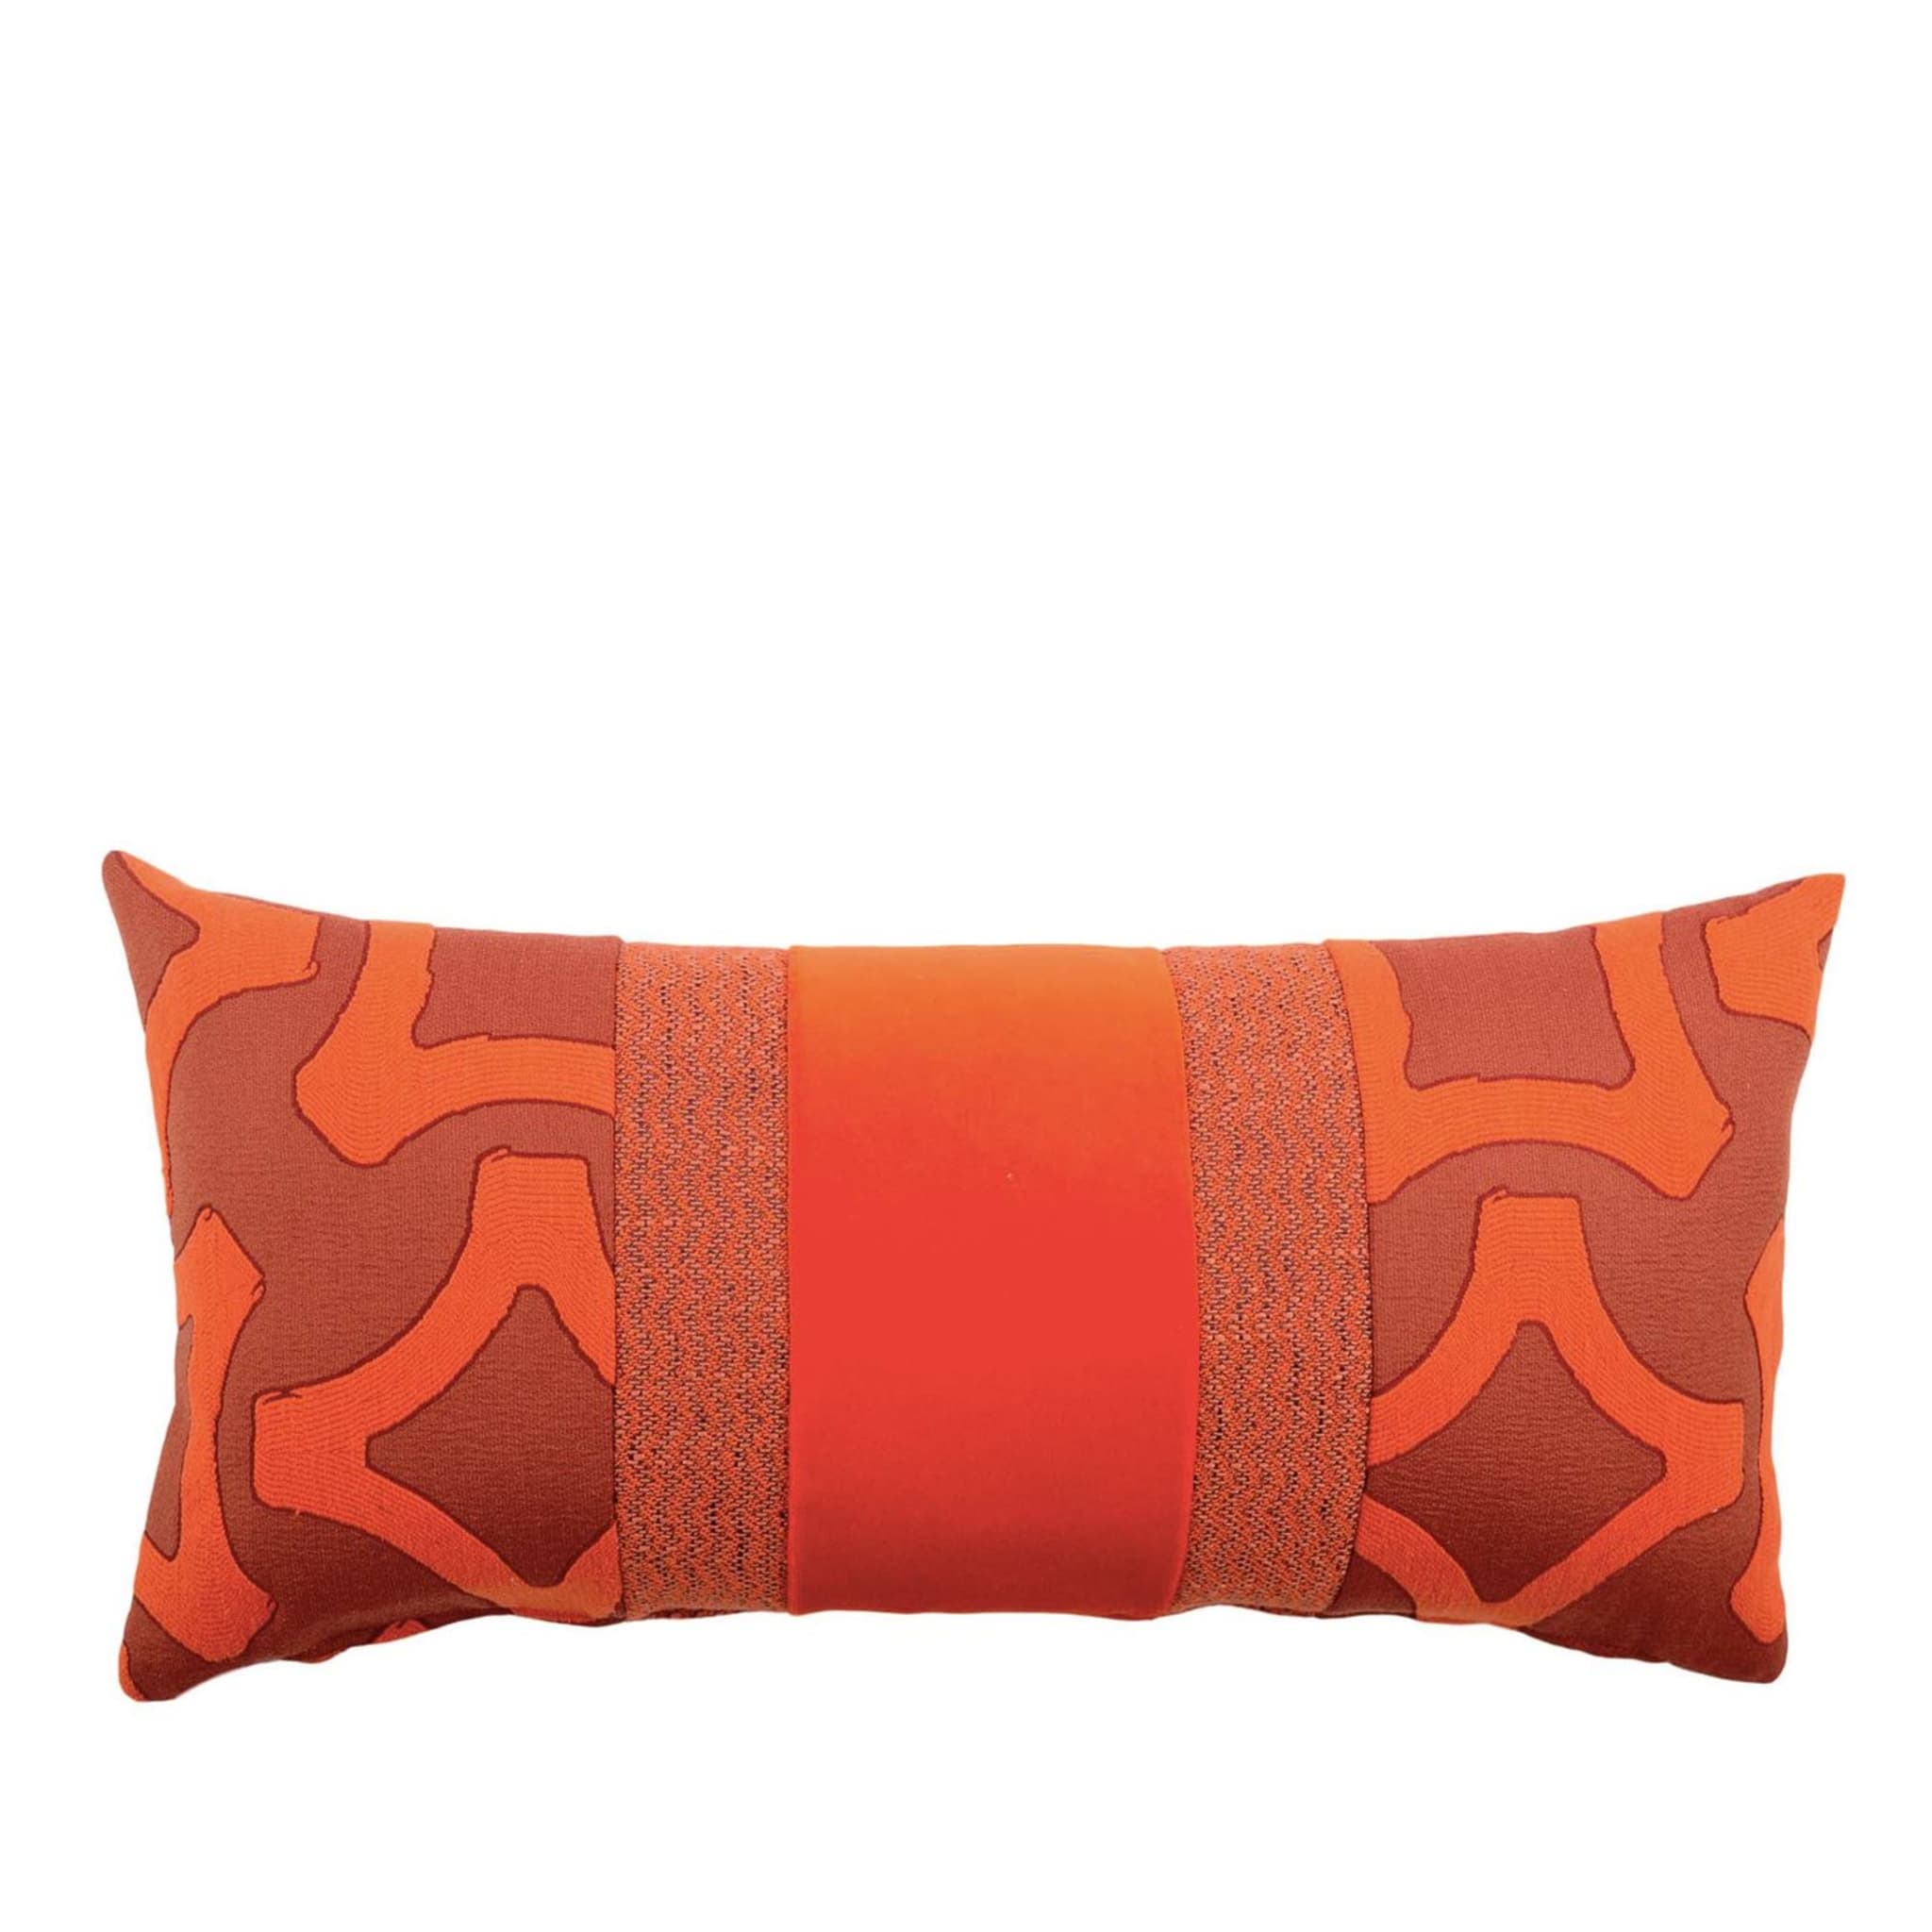 Cuscino rettangolare Nastro in tessuto jacquard e velluto di cotone arancione - Vista principale